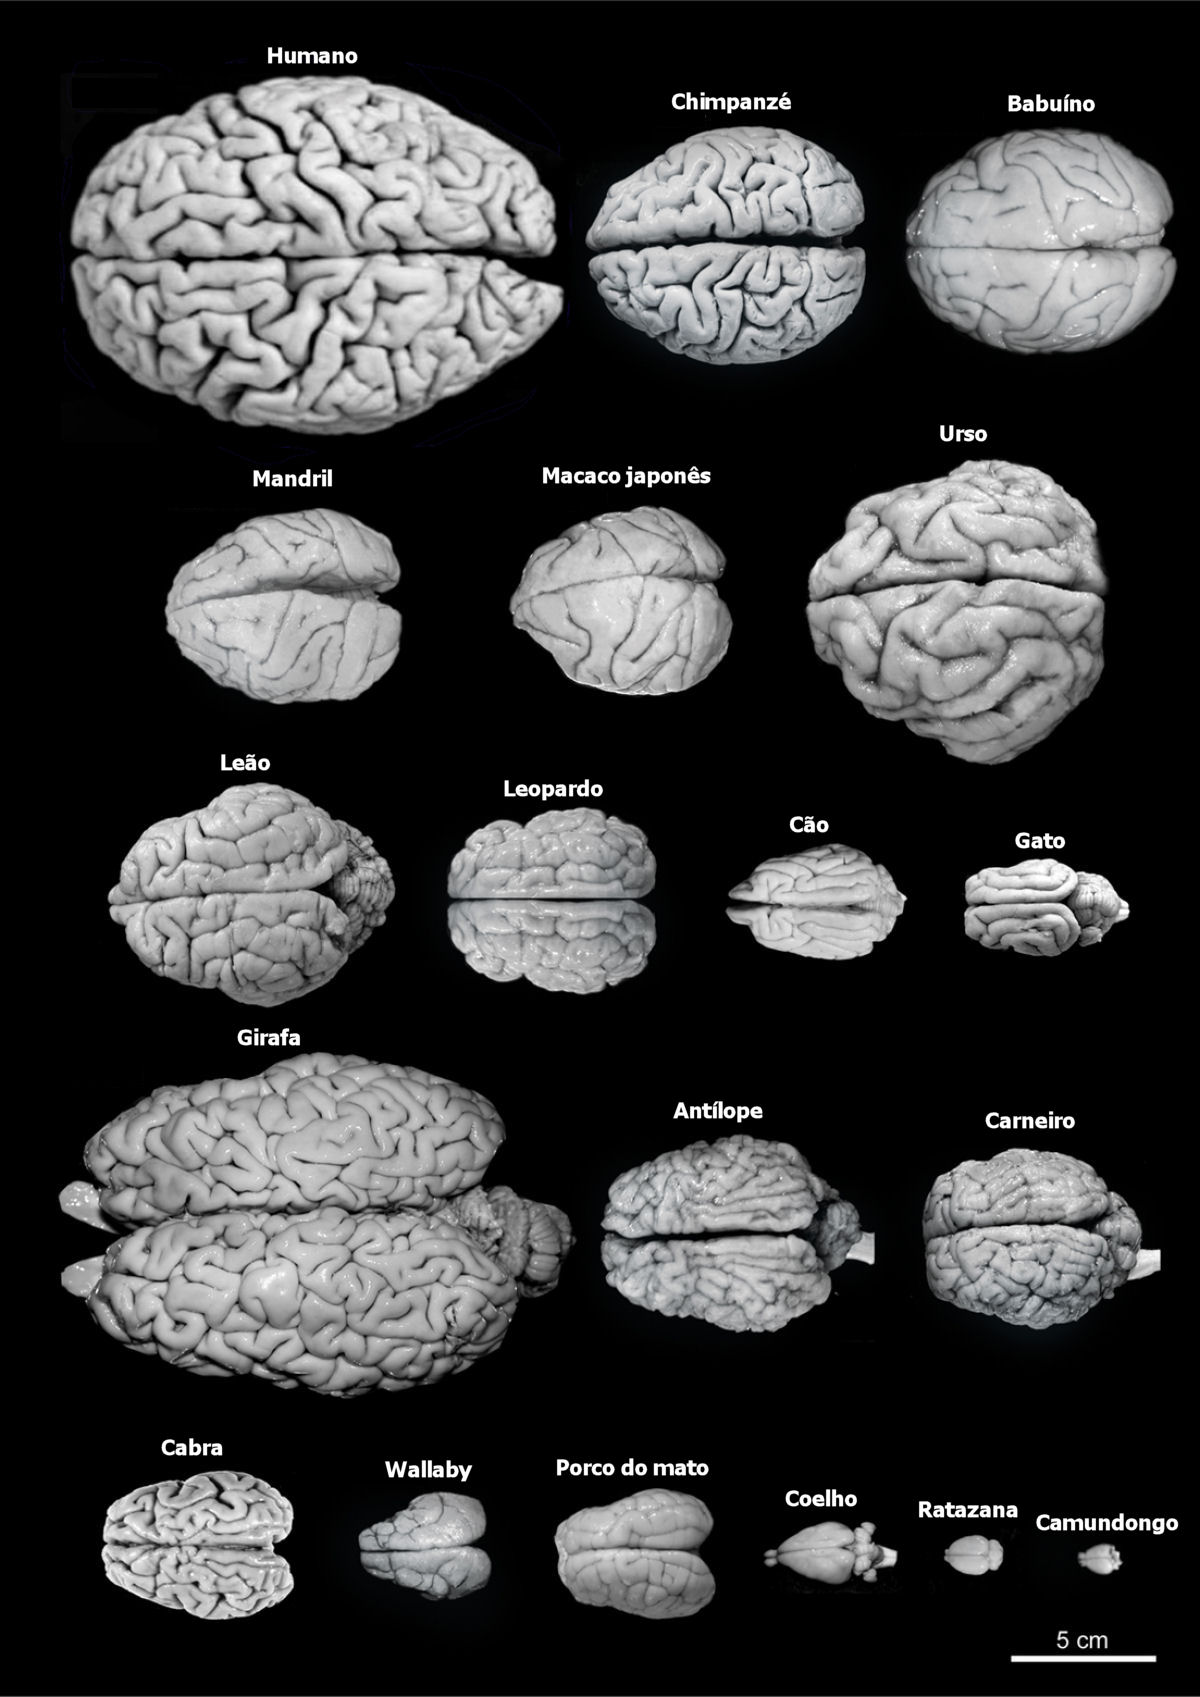 Comparando nosso crebro com outras espcies